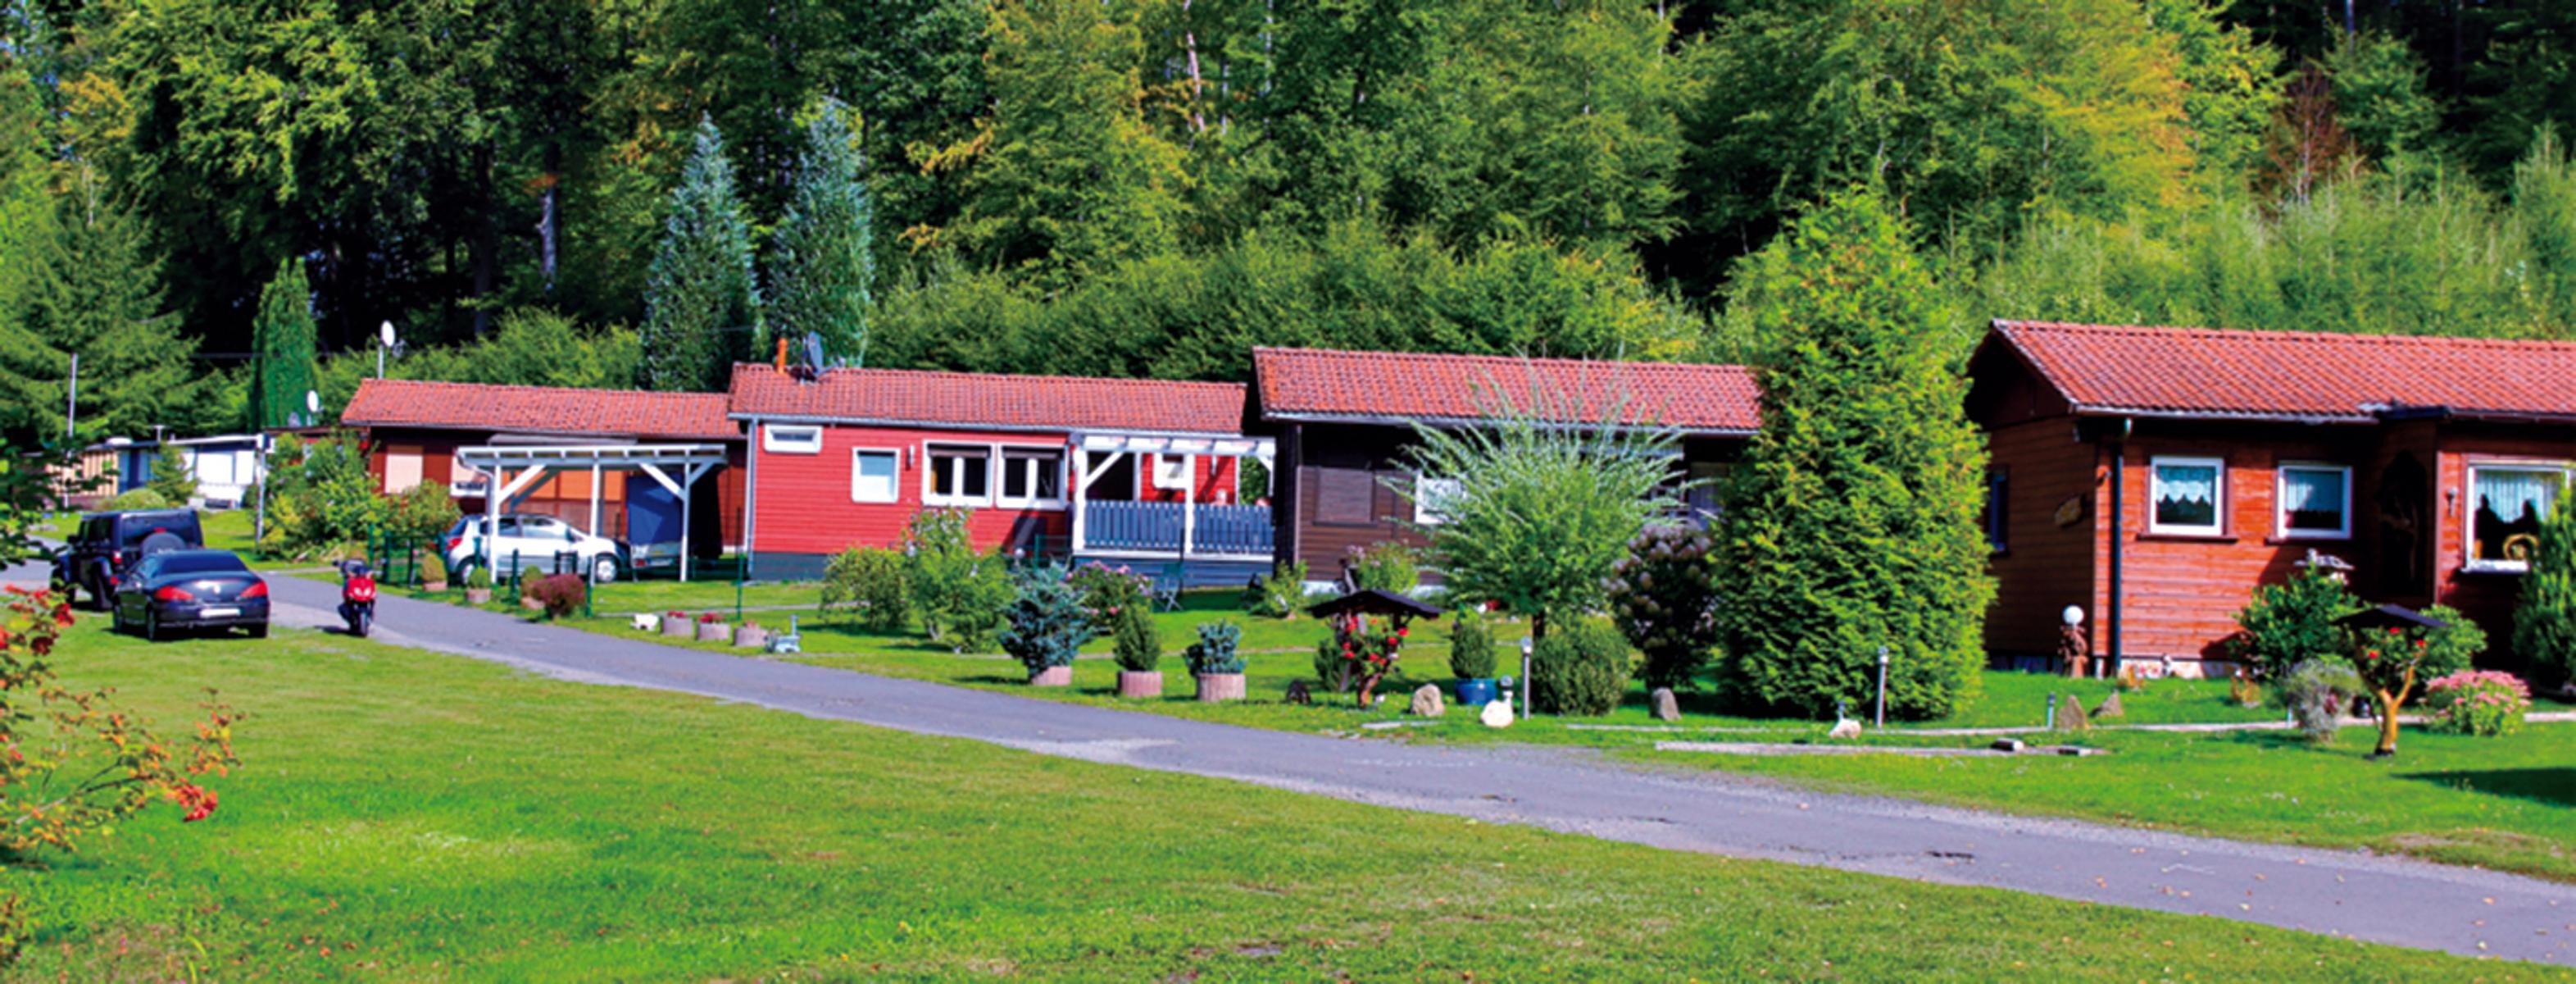 Inmitten herrlicher Natur befindet sich der Caravanpark im hessischen Laubach im Vogelsberg. Camper und Wohnmobilisten finden hier passende Plätze, auch in Bungalows kann übernachtet werden.
                 title=